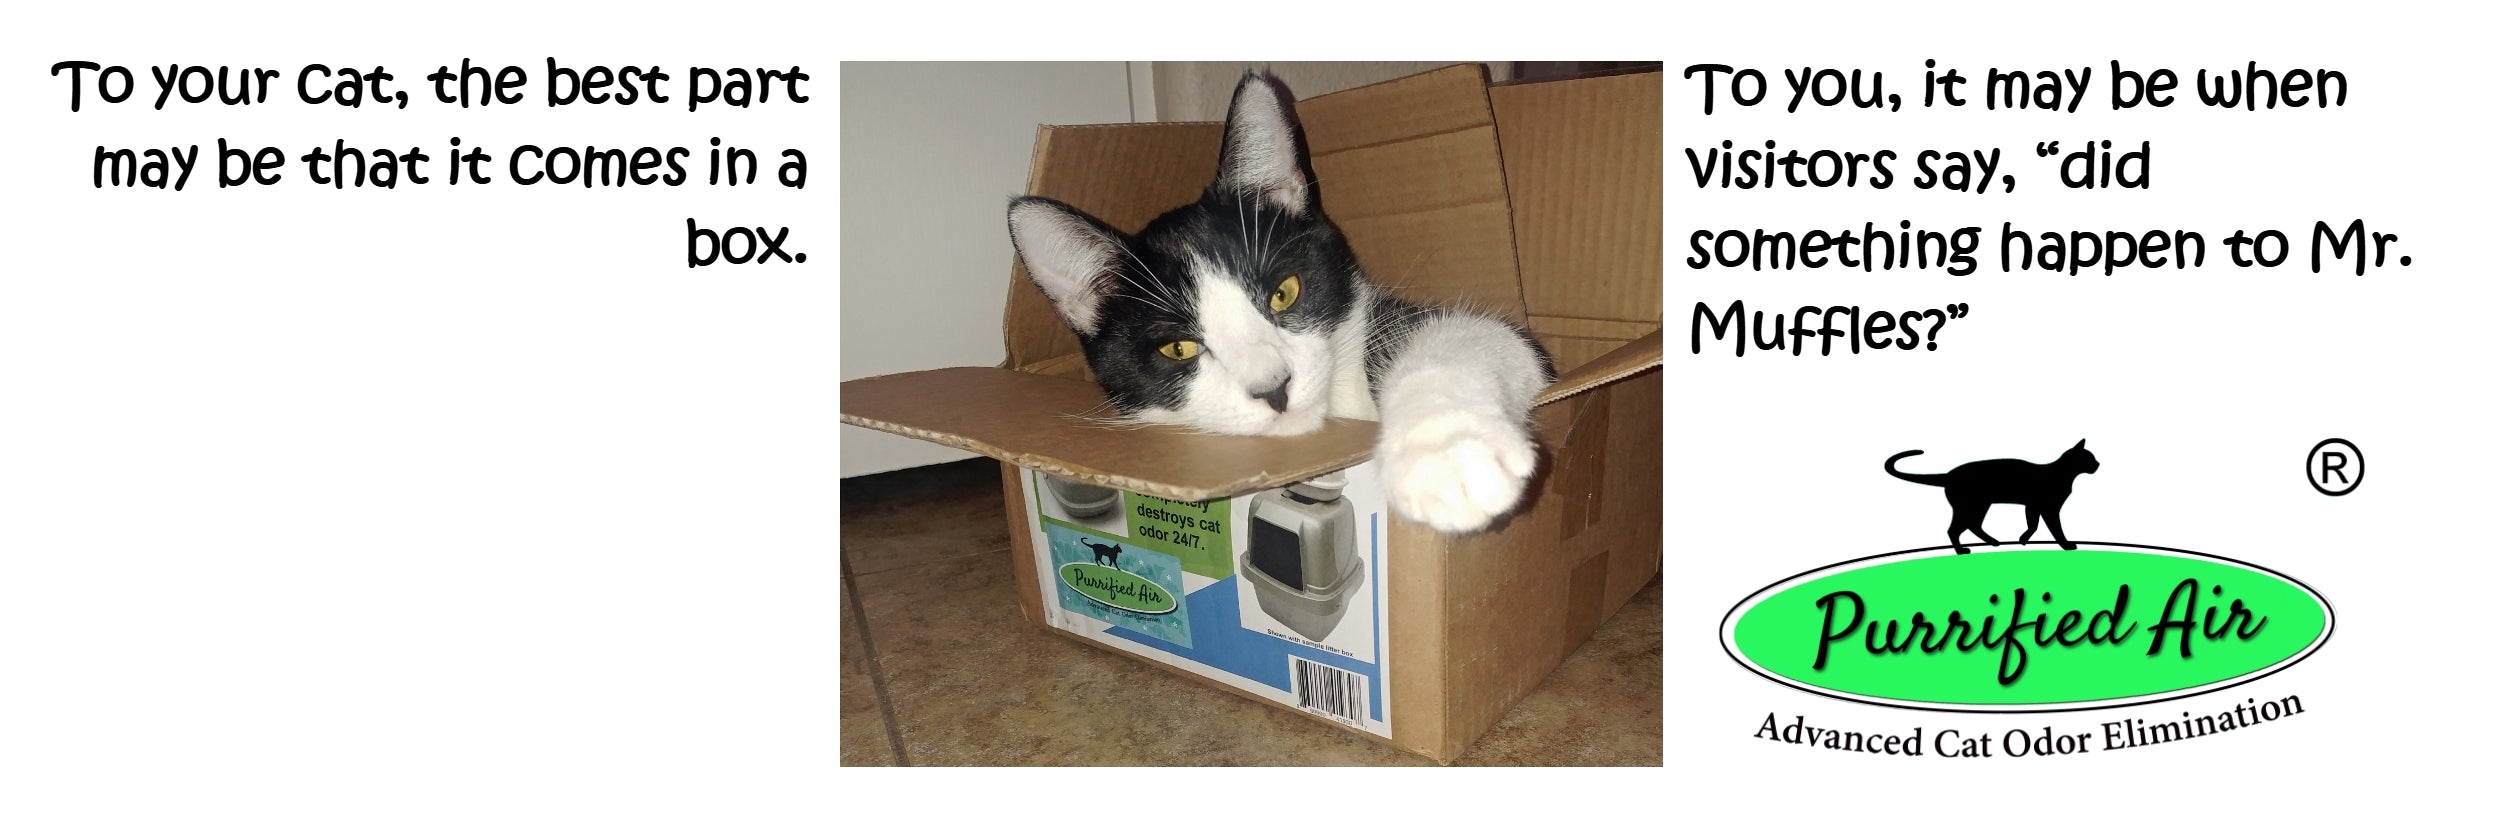 Purrified Air Litter Box Air Purifier - Purrified Air, Pet odor control - cat odor and litter box air filter, Purrified Air  - Purrified Air, Purrified Air  Purrified Air, air purifier cat litter, cat litter box air purifier